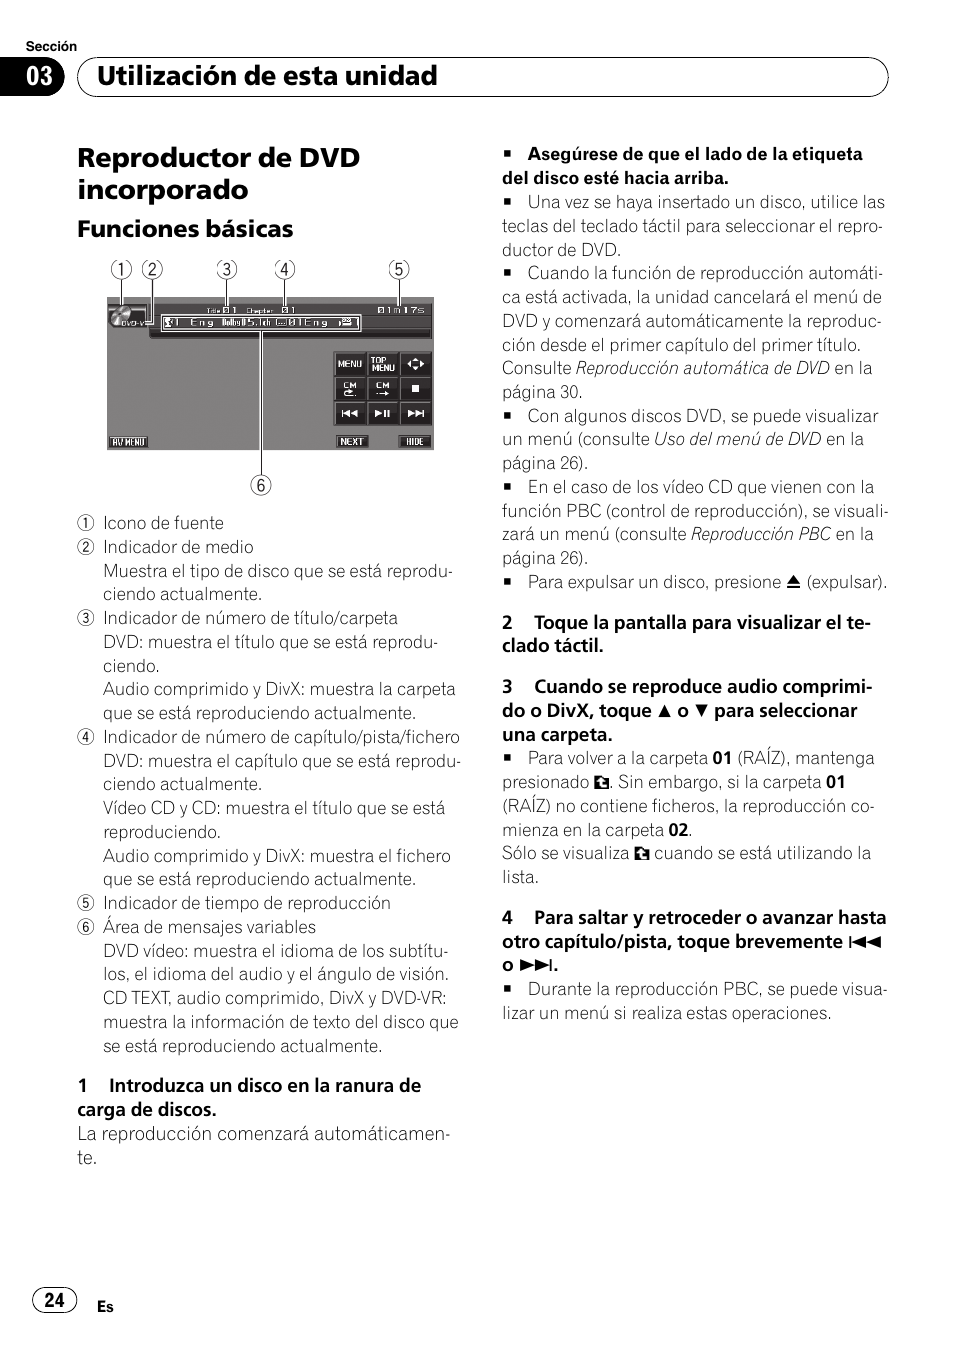 Reproductor de dvd incorporado, Funciones básicas 24, Utilización de esta unidad | Pioneer AVH-P4000DVD Manual del usuario | Página 24 / 109